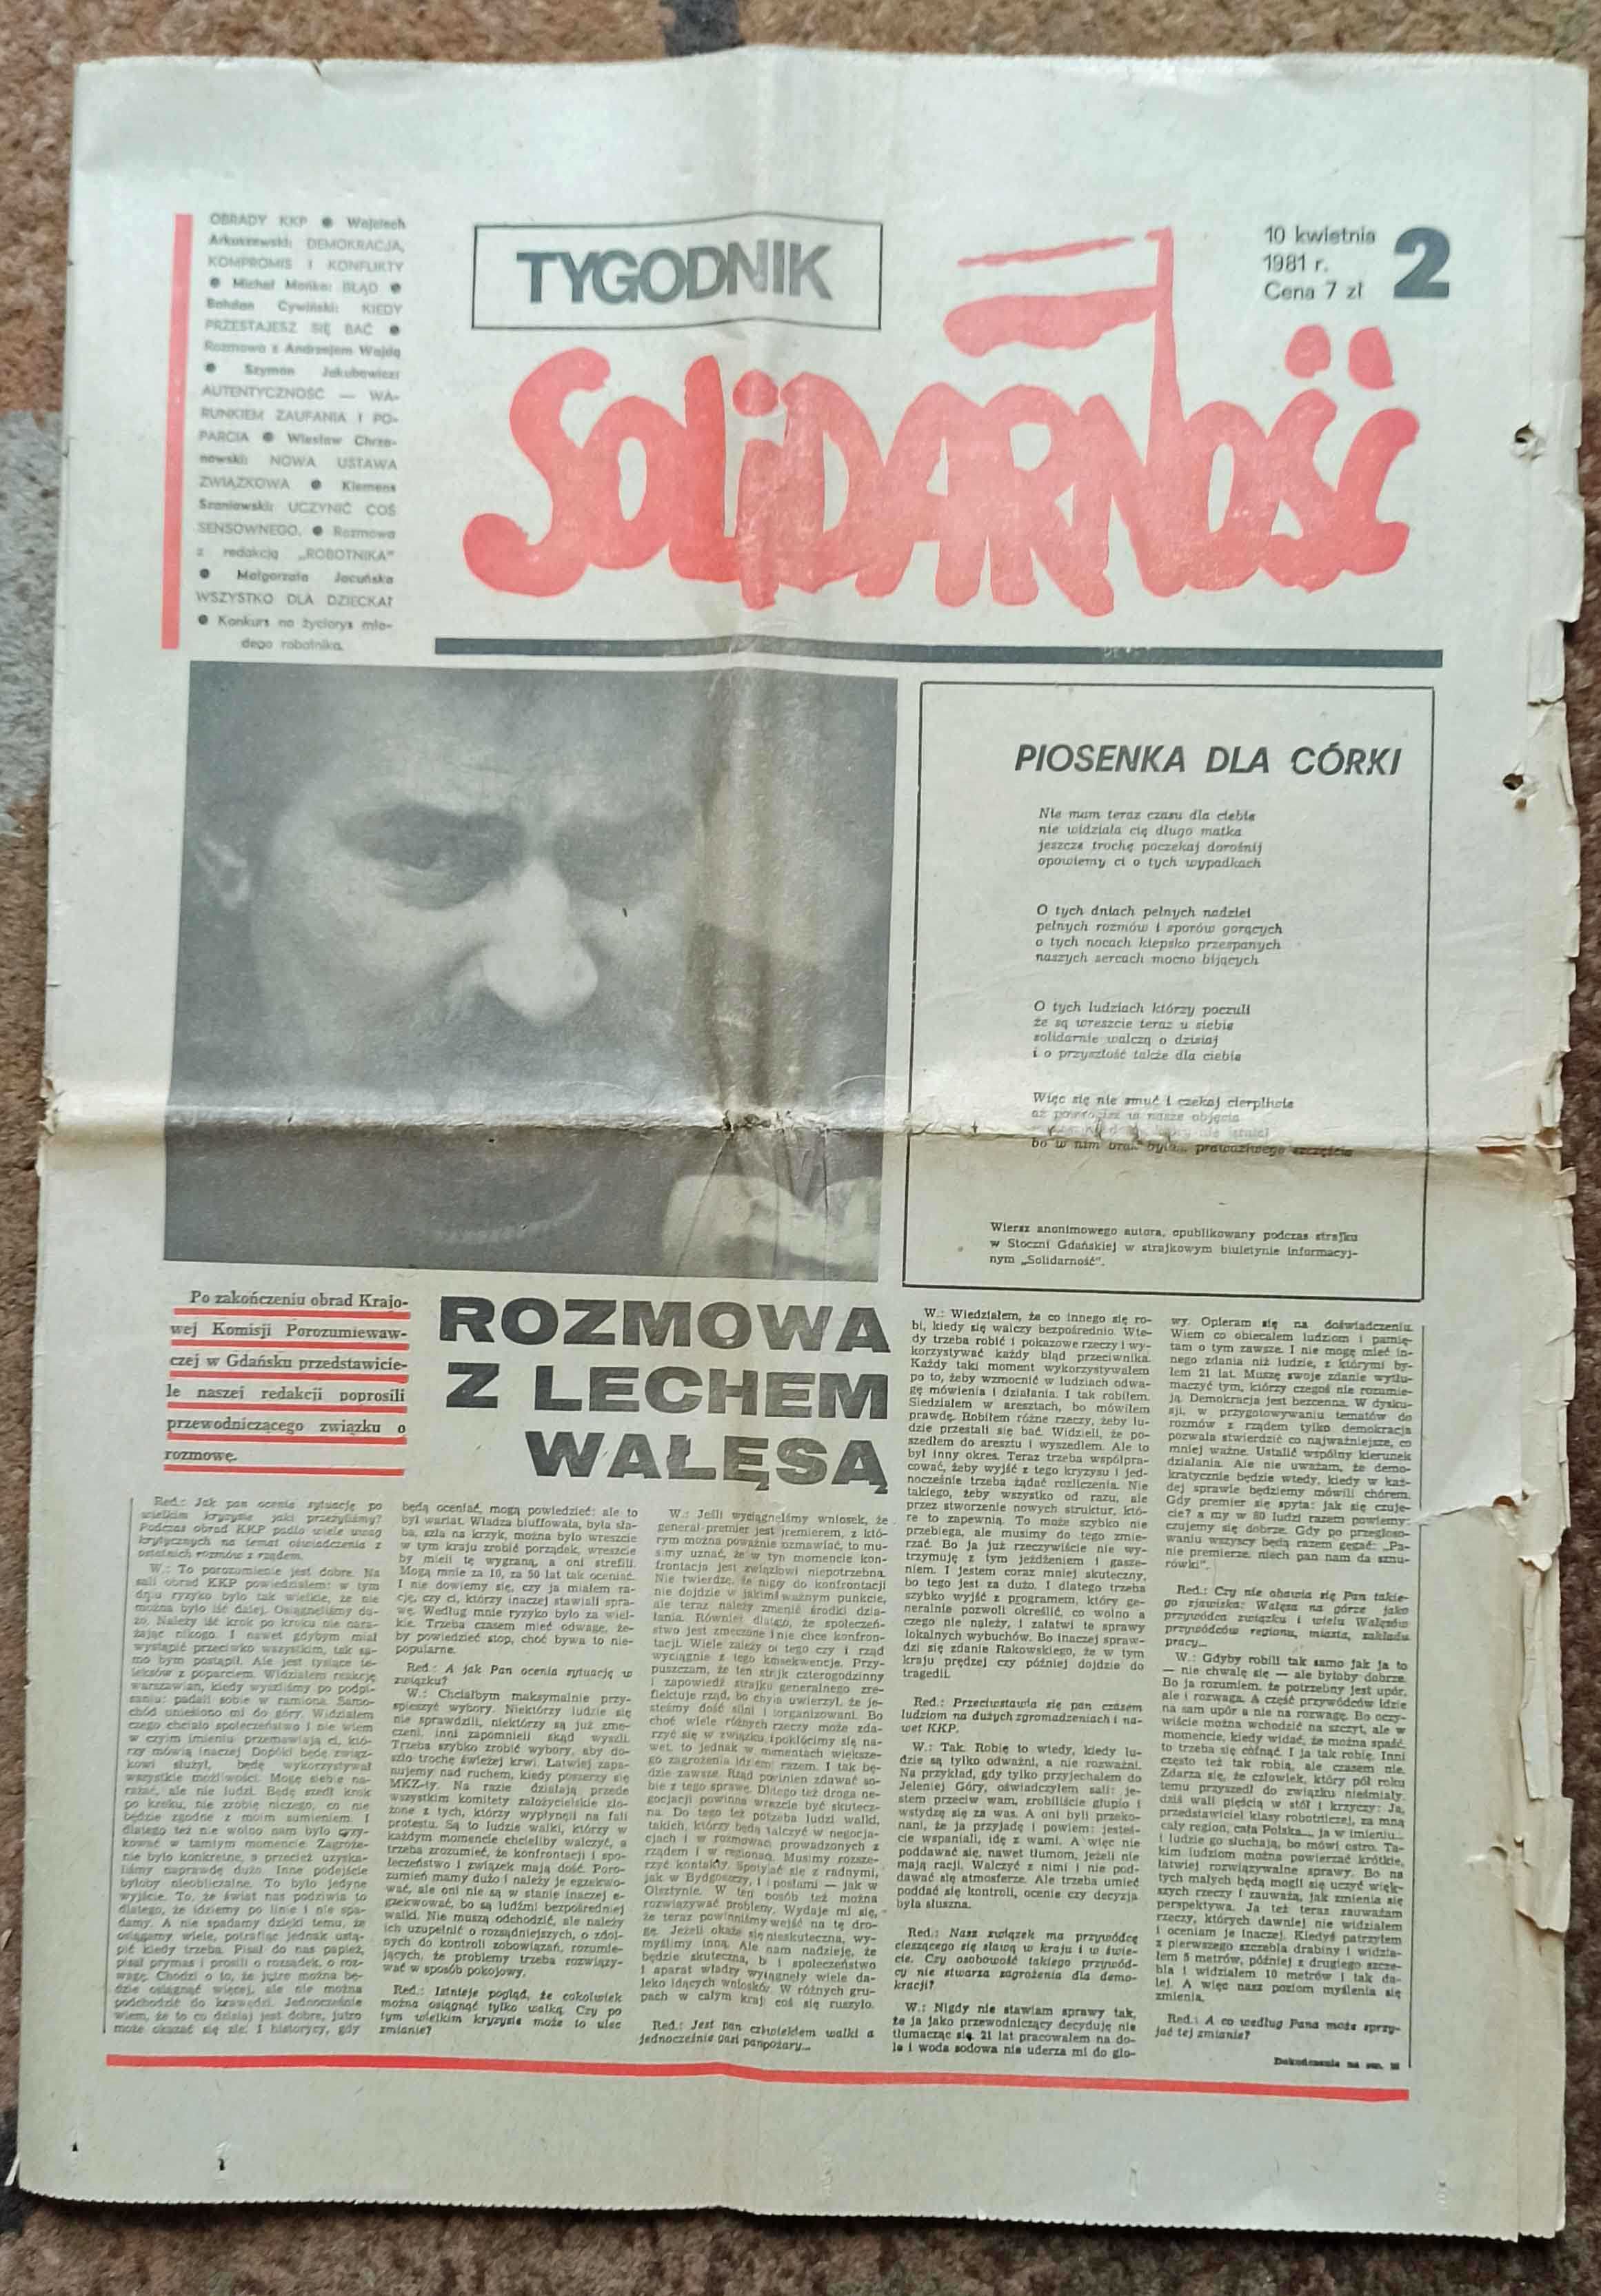 Tygodnik Solidarność Nr 2 z 1981 roku